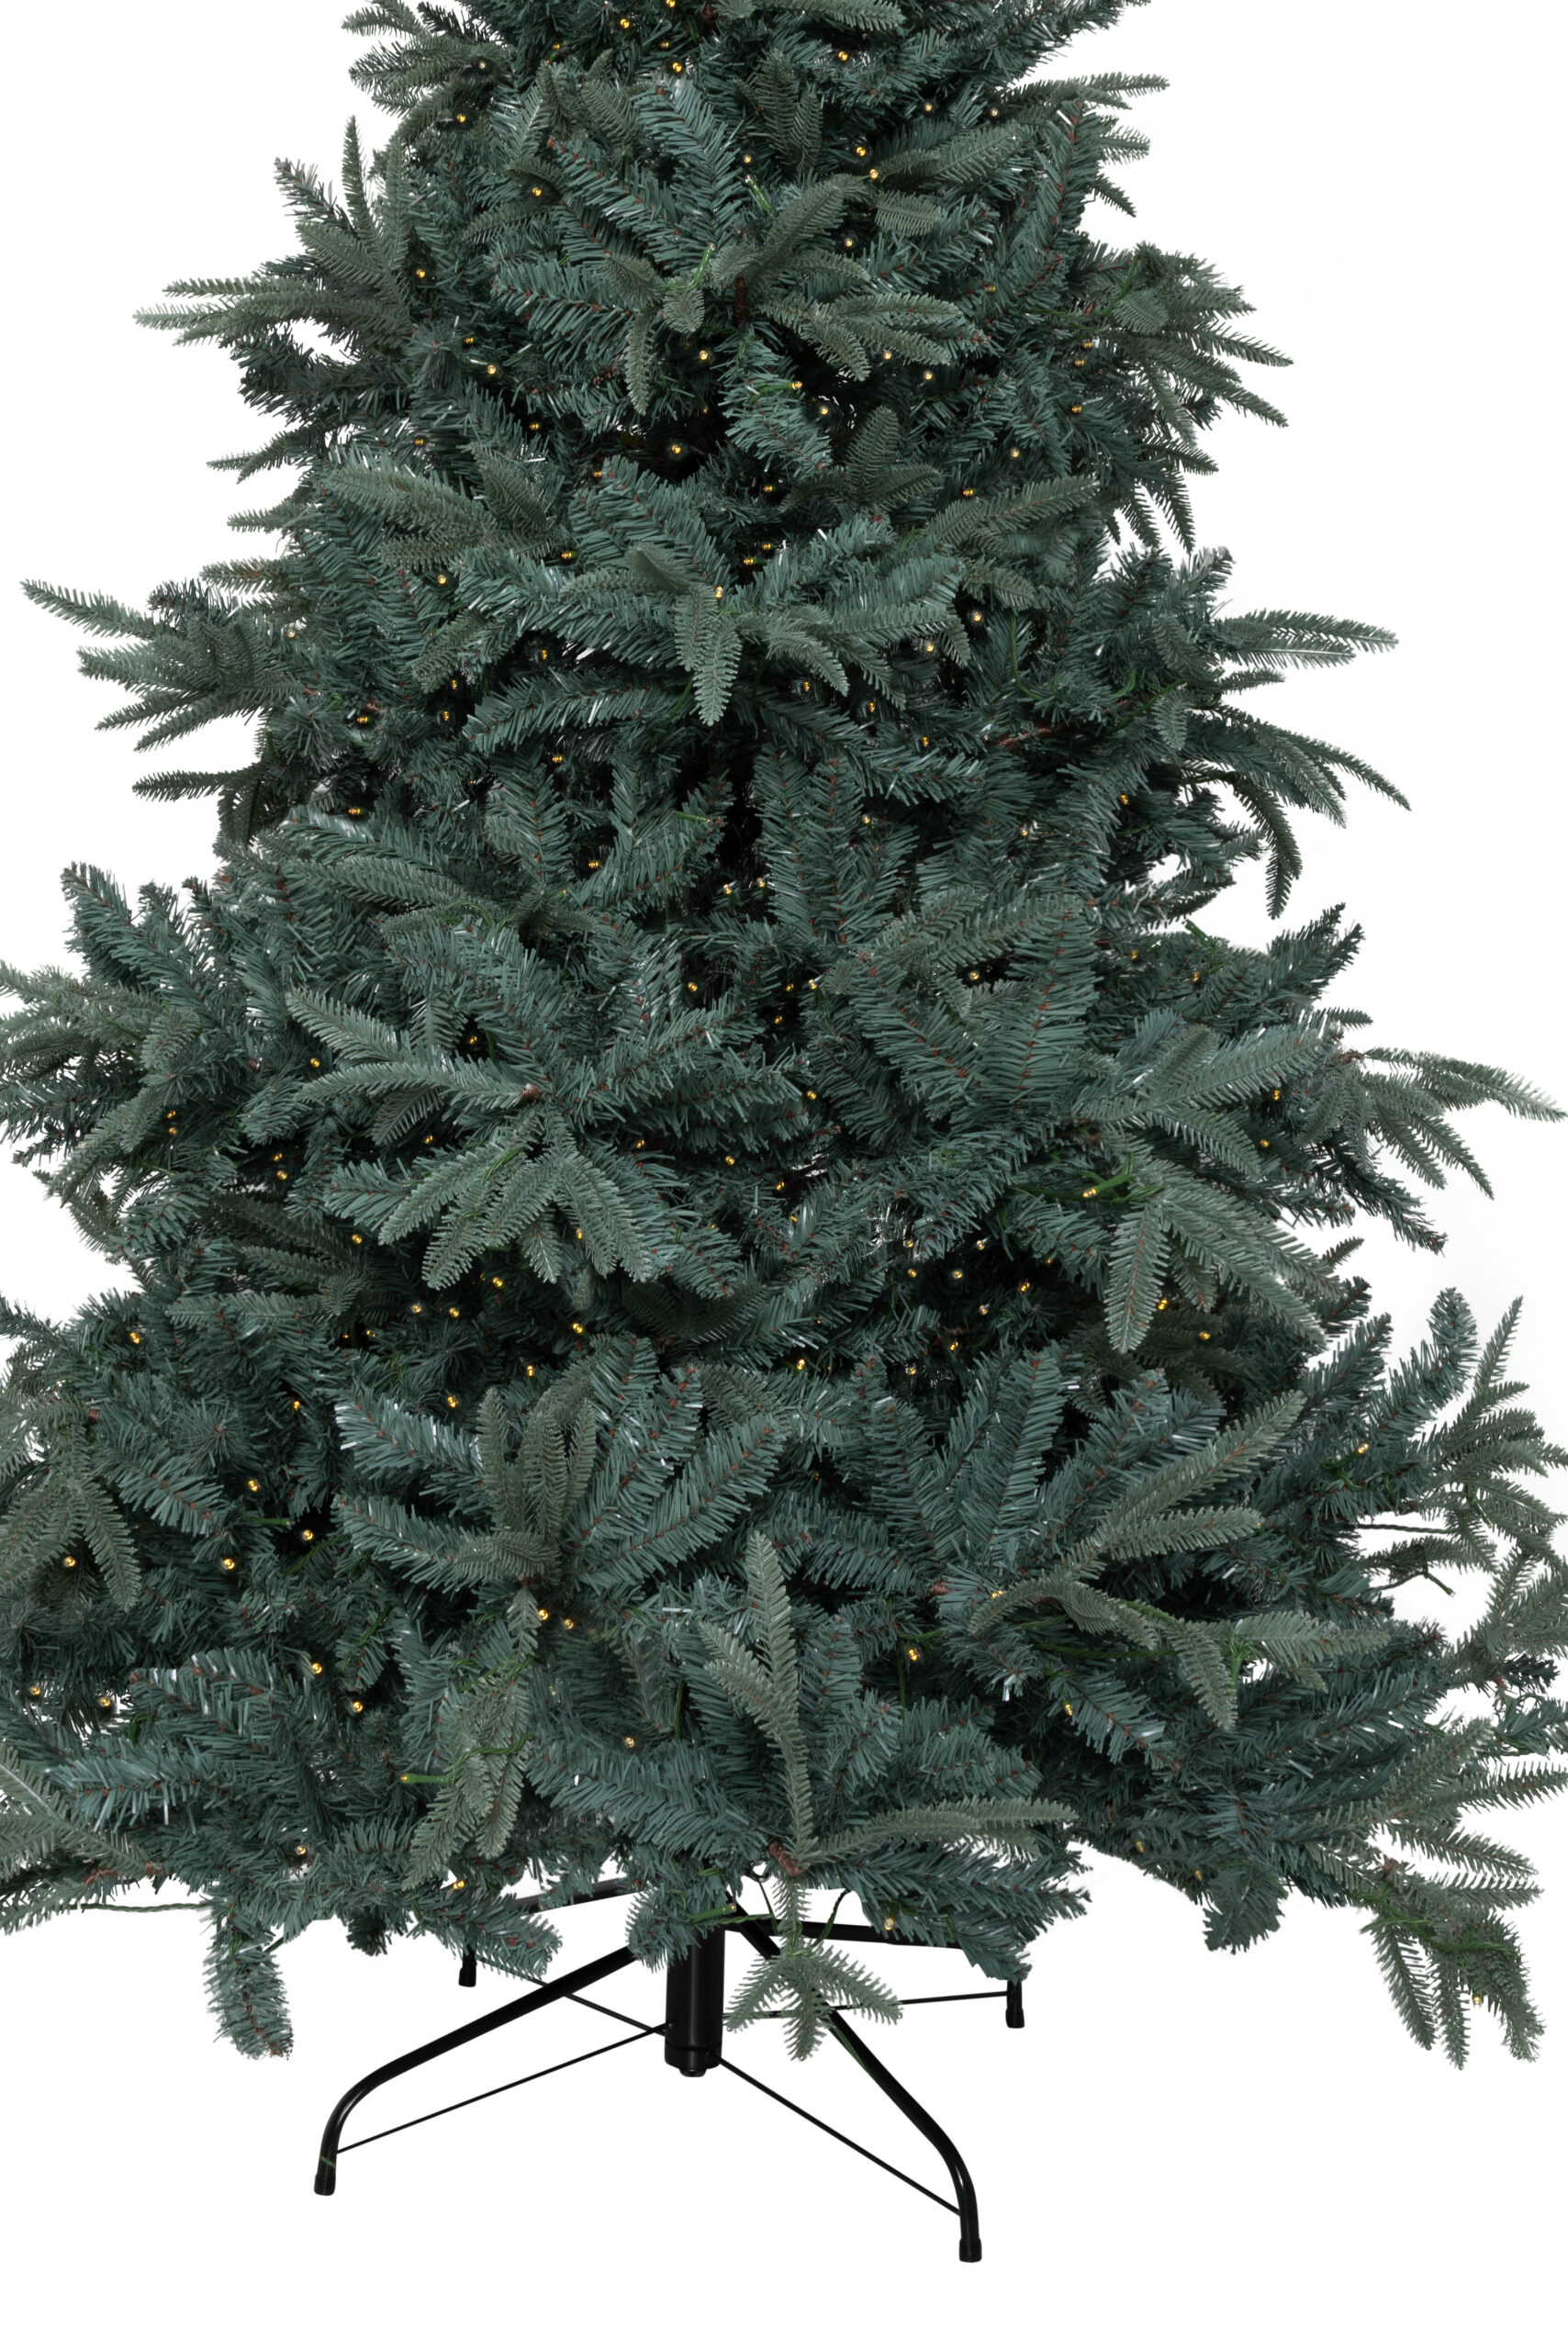 Verenigen legaal Sanctie Tisdale blauwspar kerstboom met verlichting - KJ Kunstkerstbomen